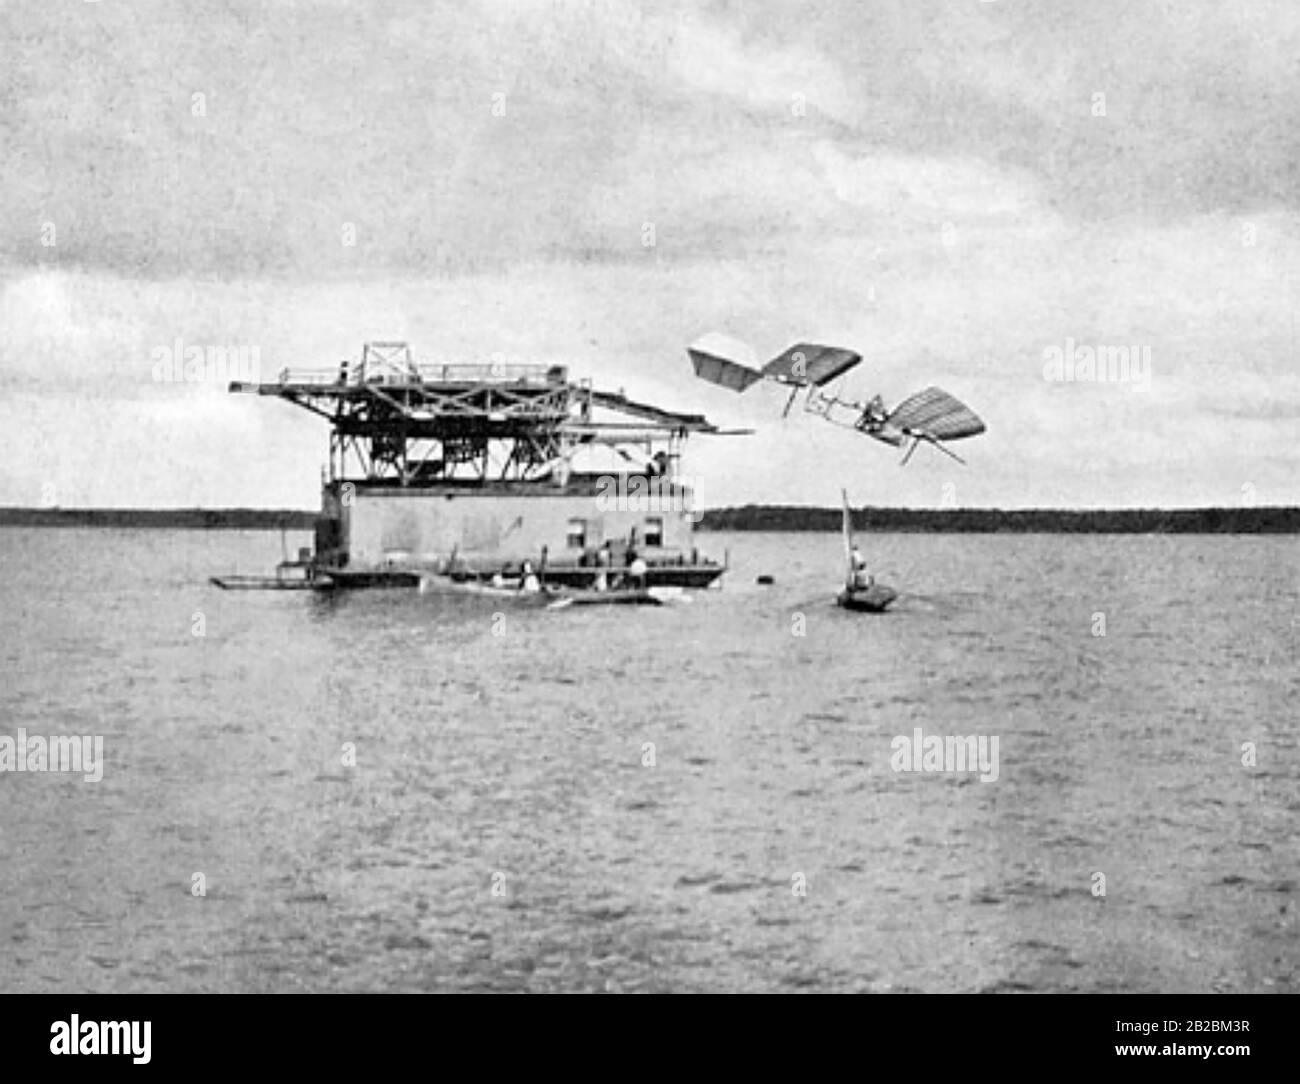 Samuel LANGLEY (1834-1906) US-amerikanischer Physiker, Astronom und Luftfahrtpionier um das Jahr 1895. Der erste Ausfall des bemannten Aerodroms mit Pilot Charles Manley, als dieser am 7. Oktober 1908 in den Potomac River abstürzt. Stockfoto